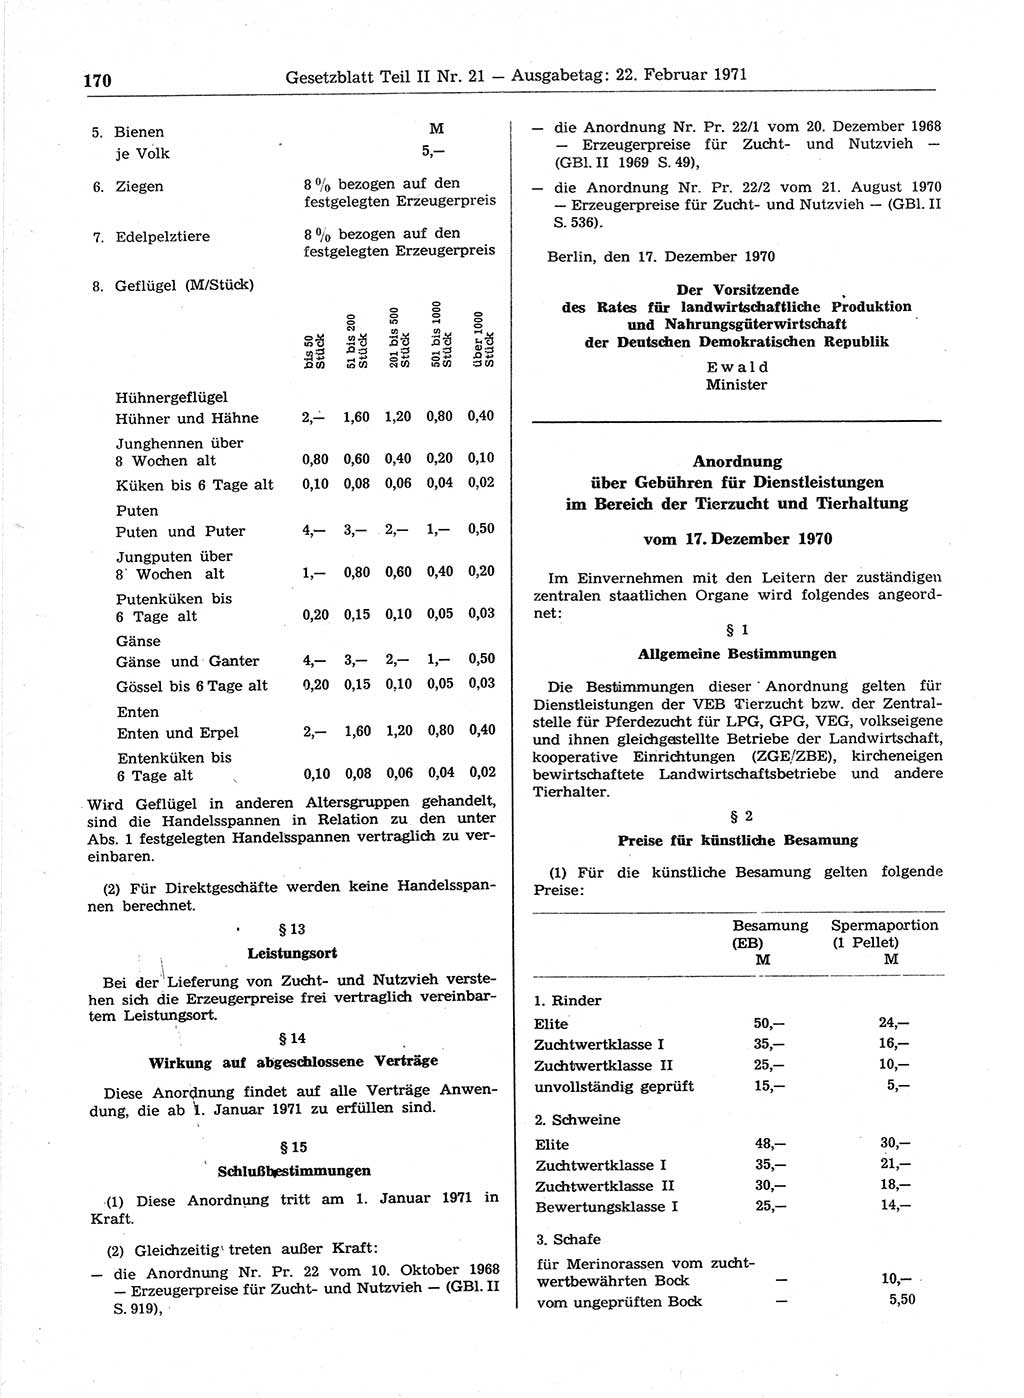 Gesetzblatt (GBl.) der Deutschen Demokratischen Republik (DDR) Teil ⅠⅠ 1971, Seite 170 (GBl. DDR ⅠⅠ 1971, S. 170)